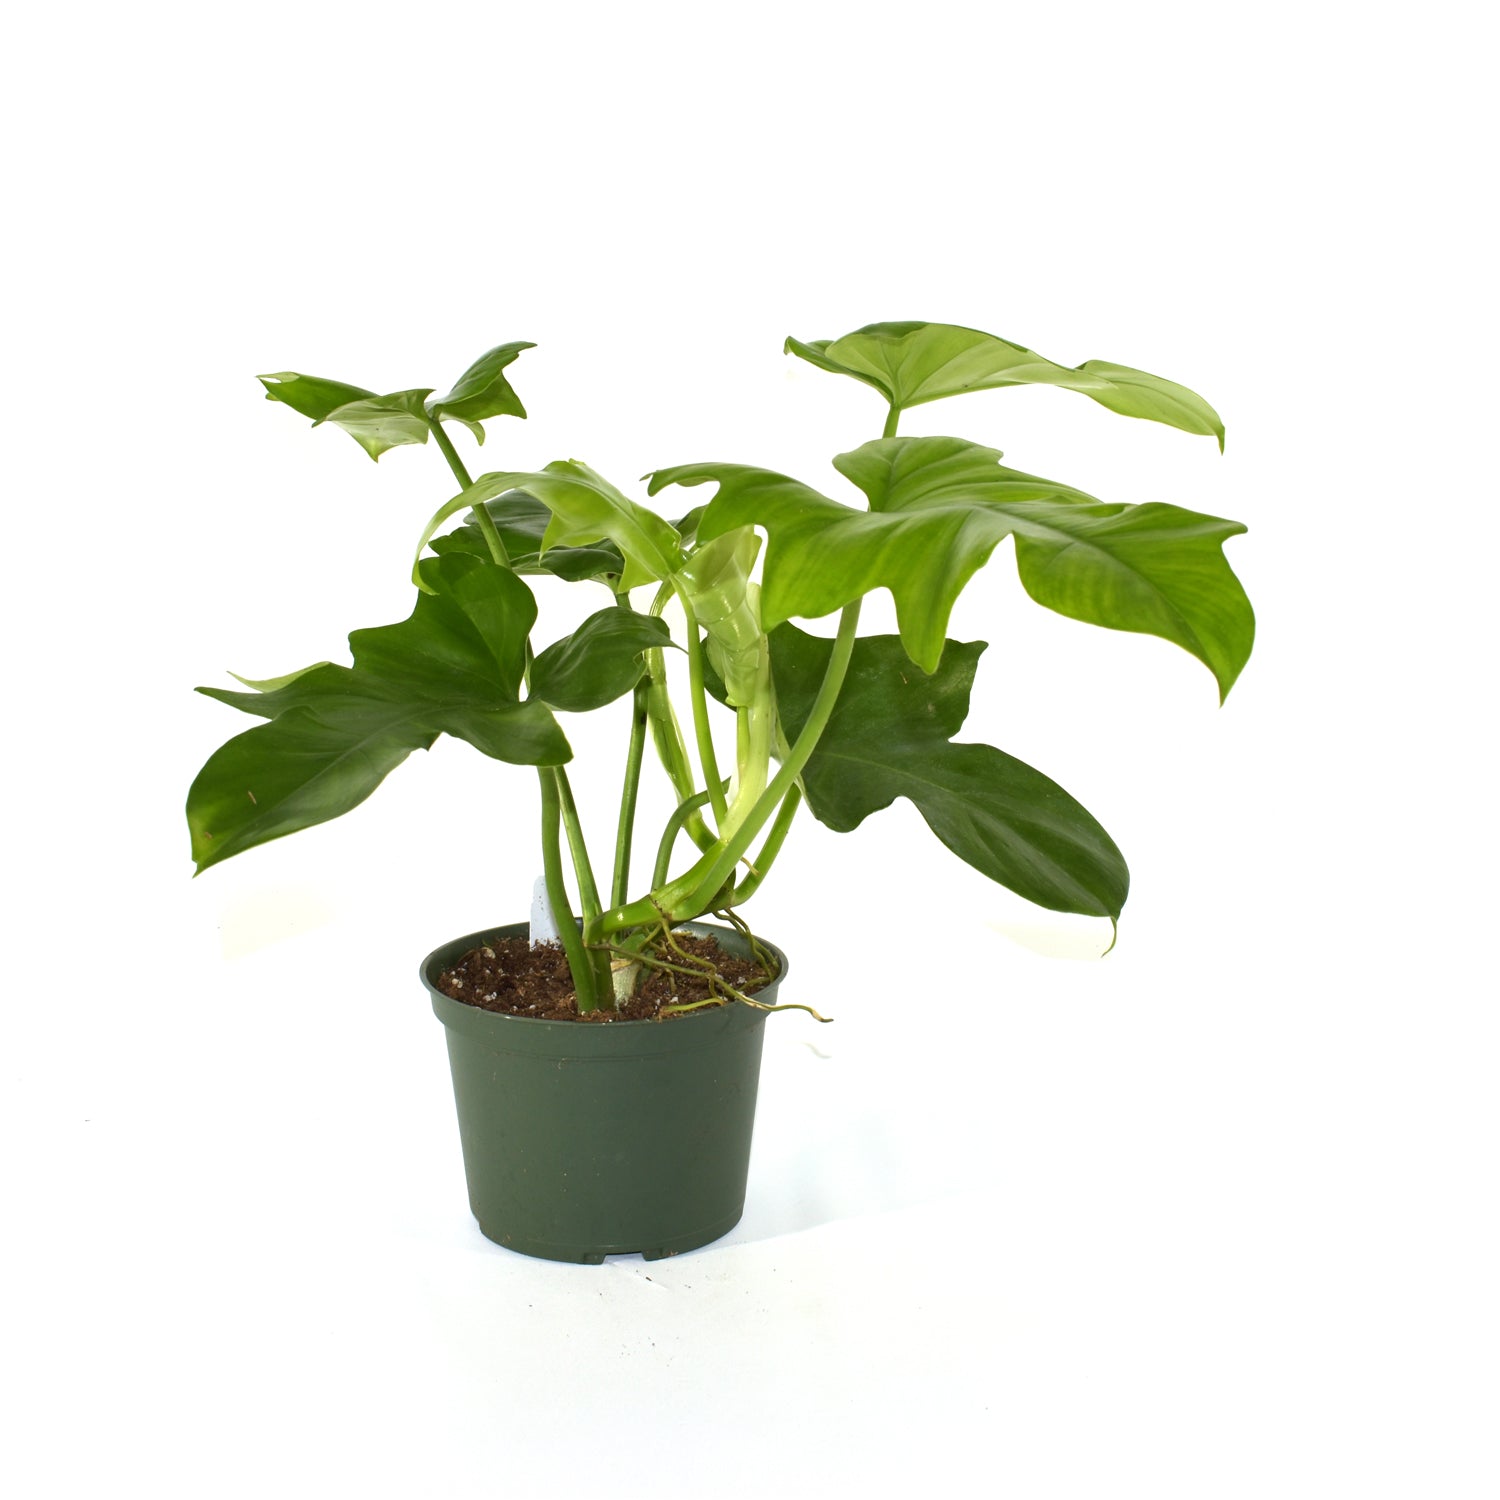 Philodendron pedatum x distantilobum - 5.5" Pot